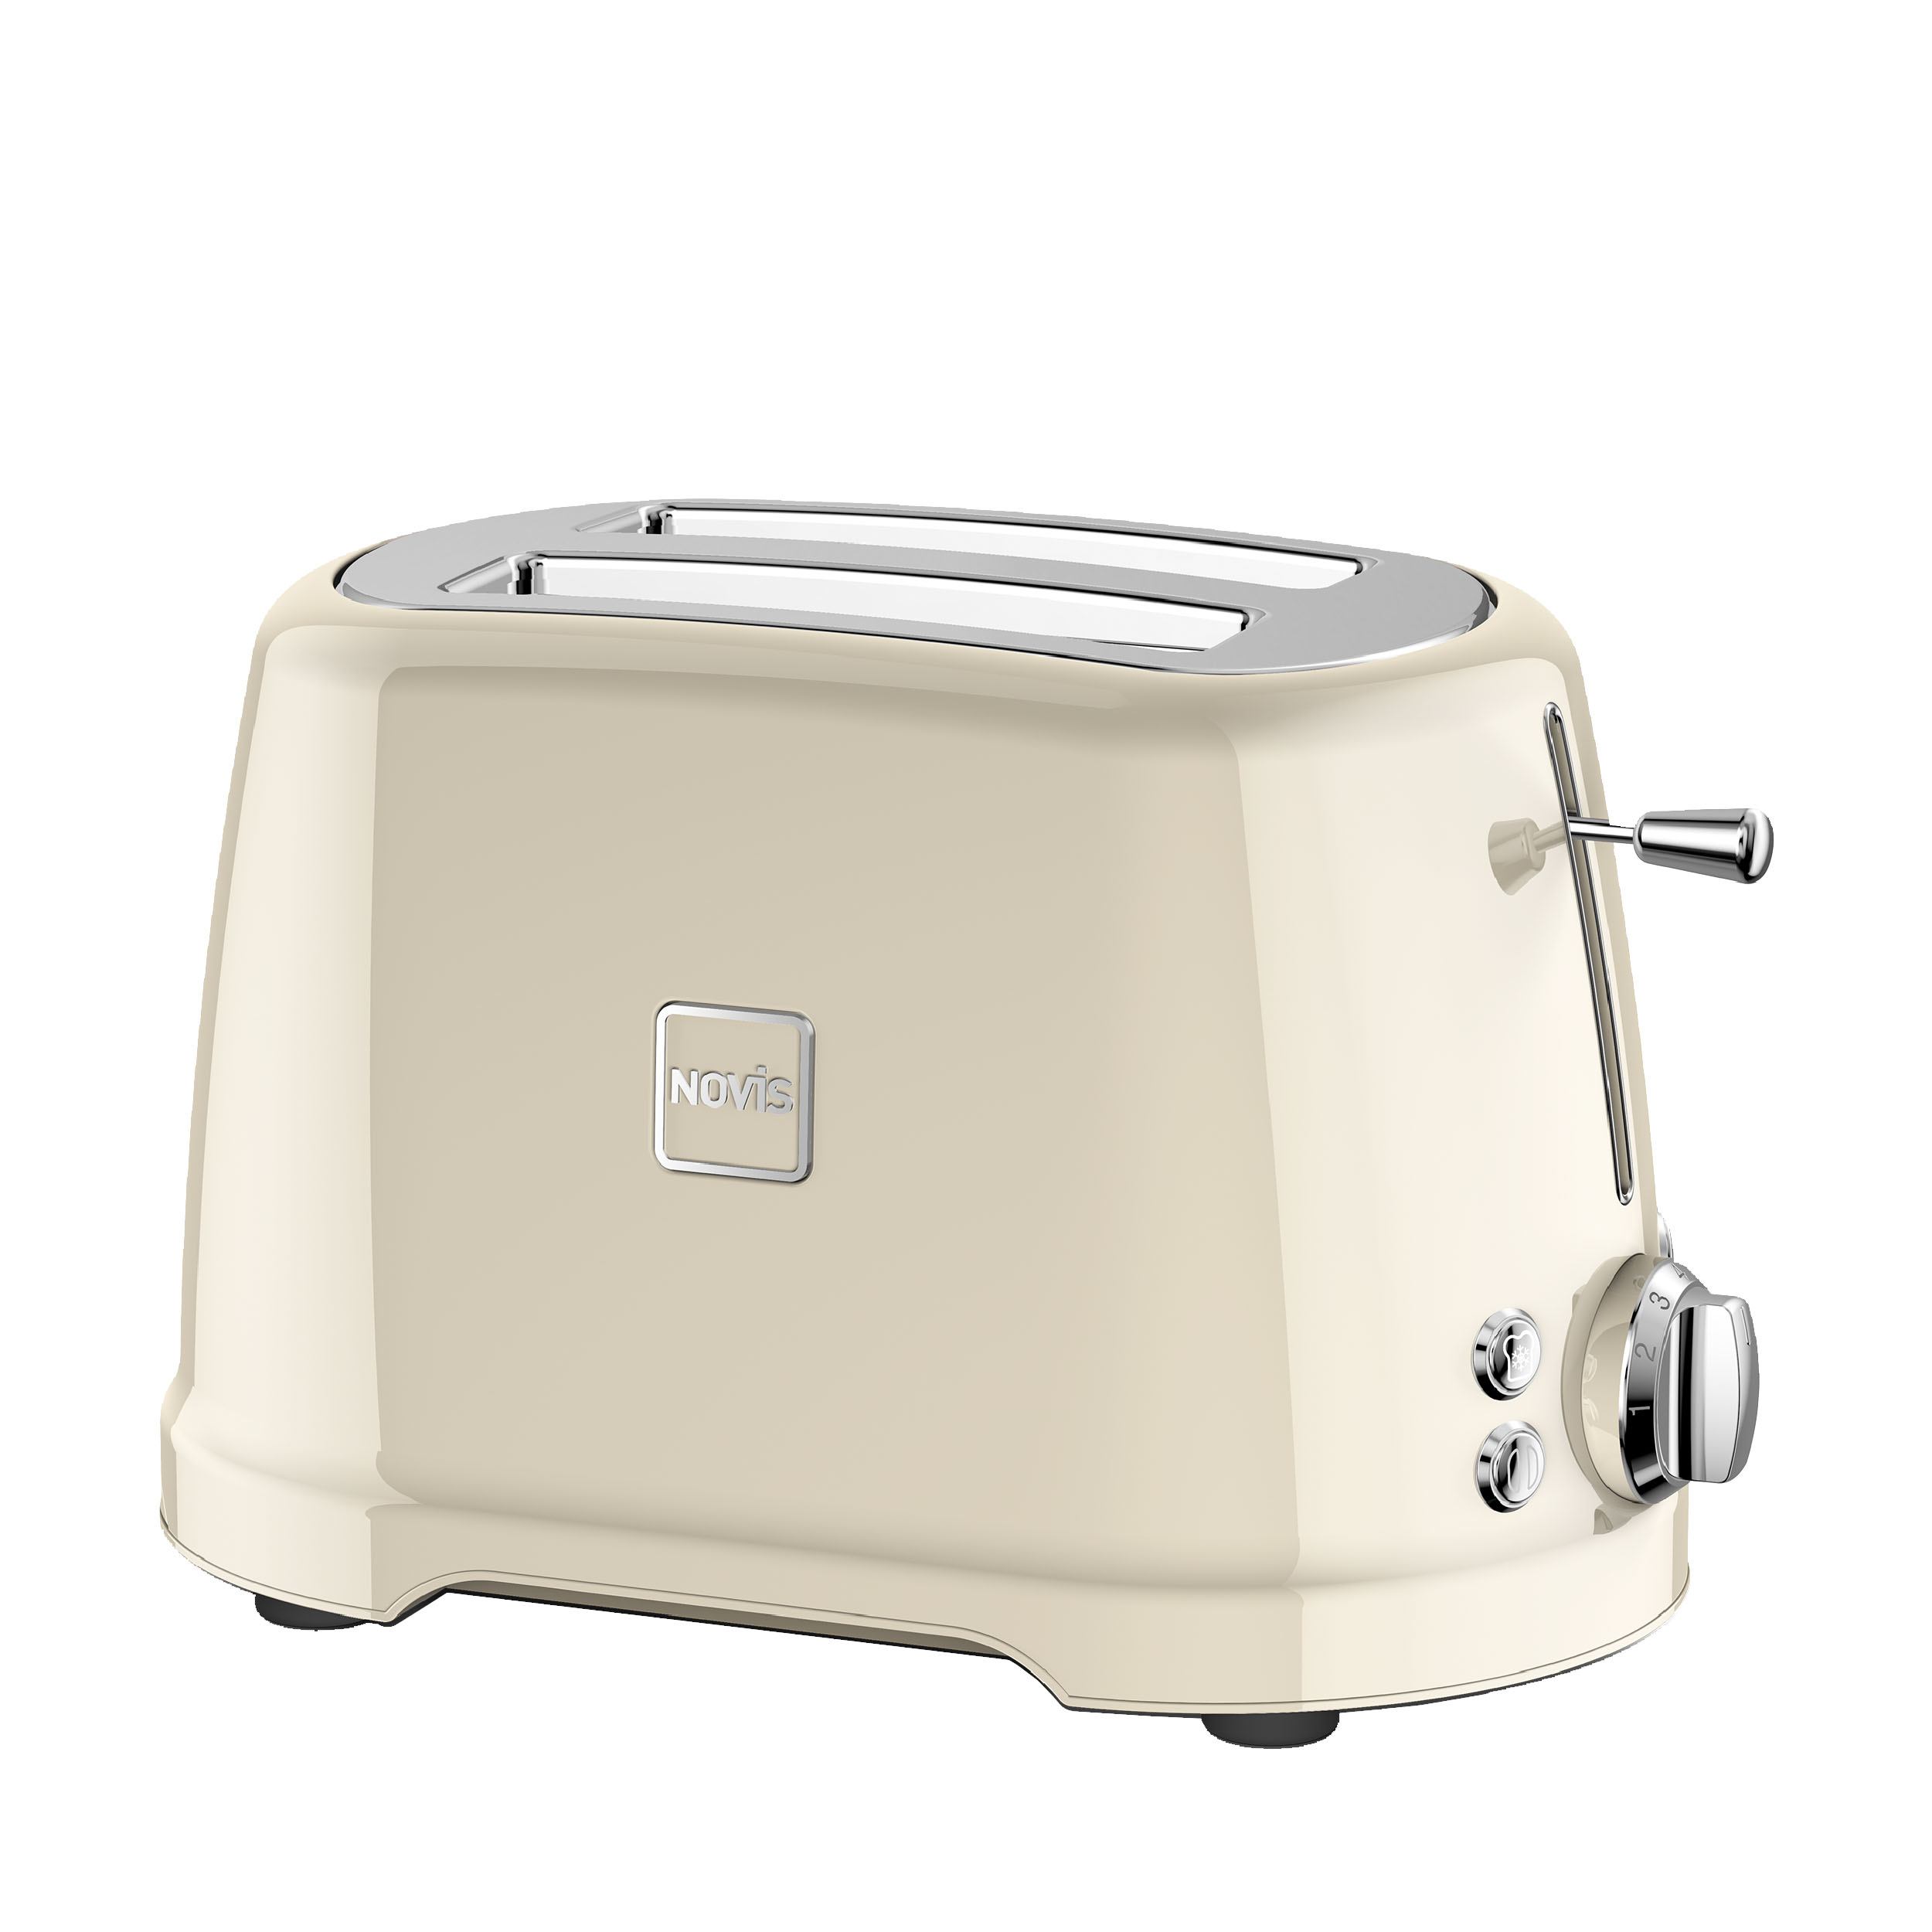 Novis T2 Toaster